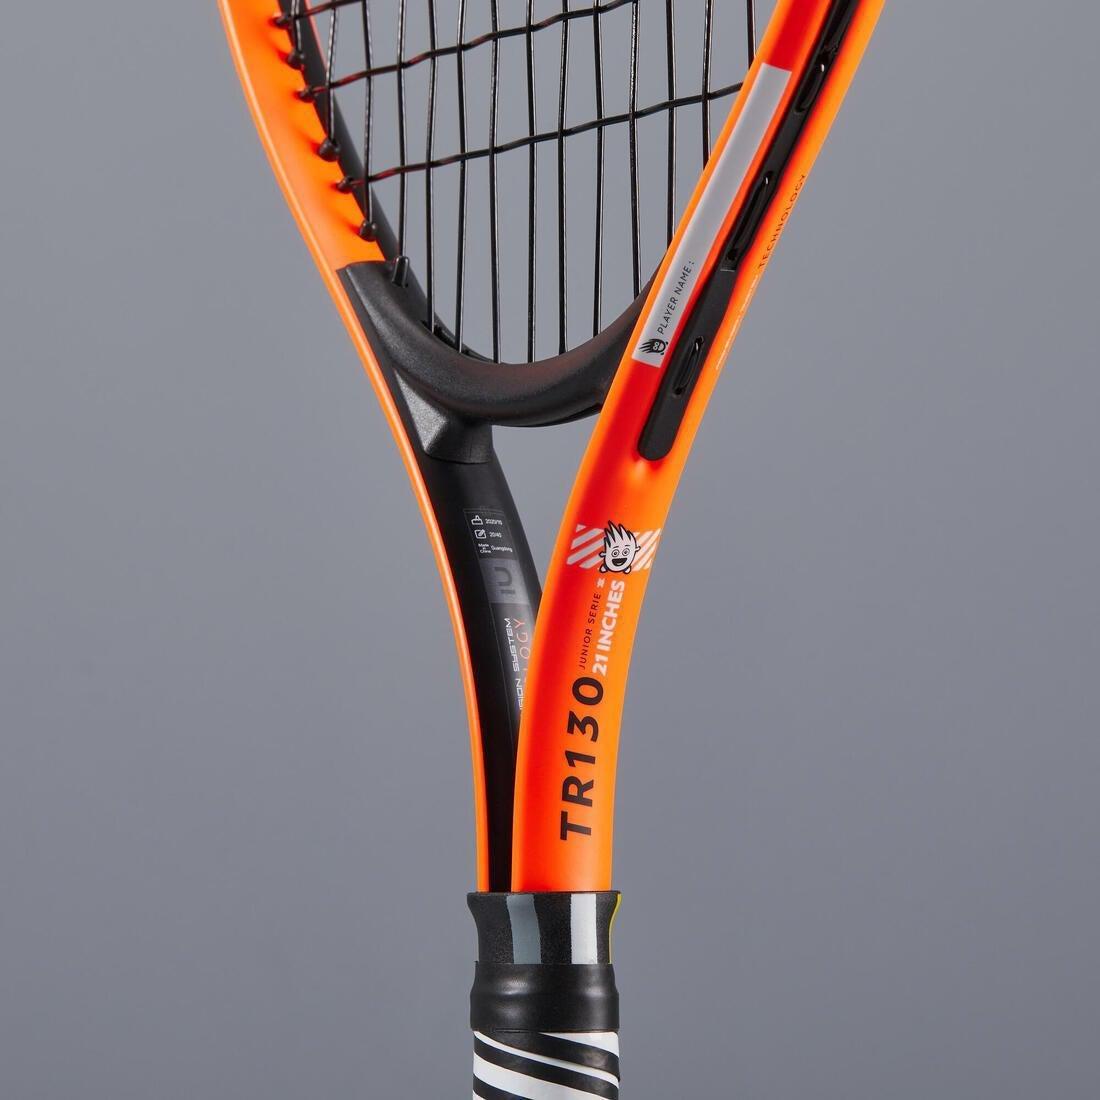 ARTENGO - Kids 21 Tennis Racket Tr130